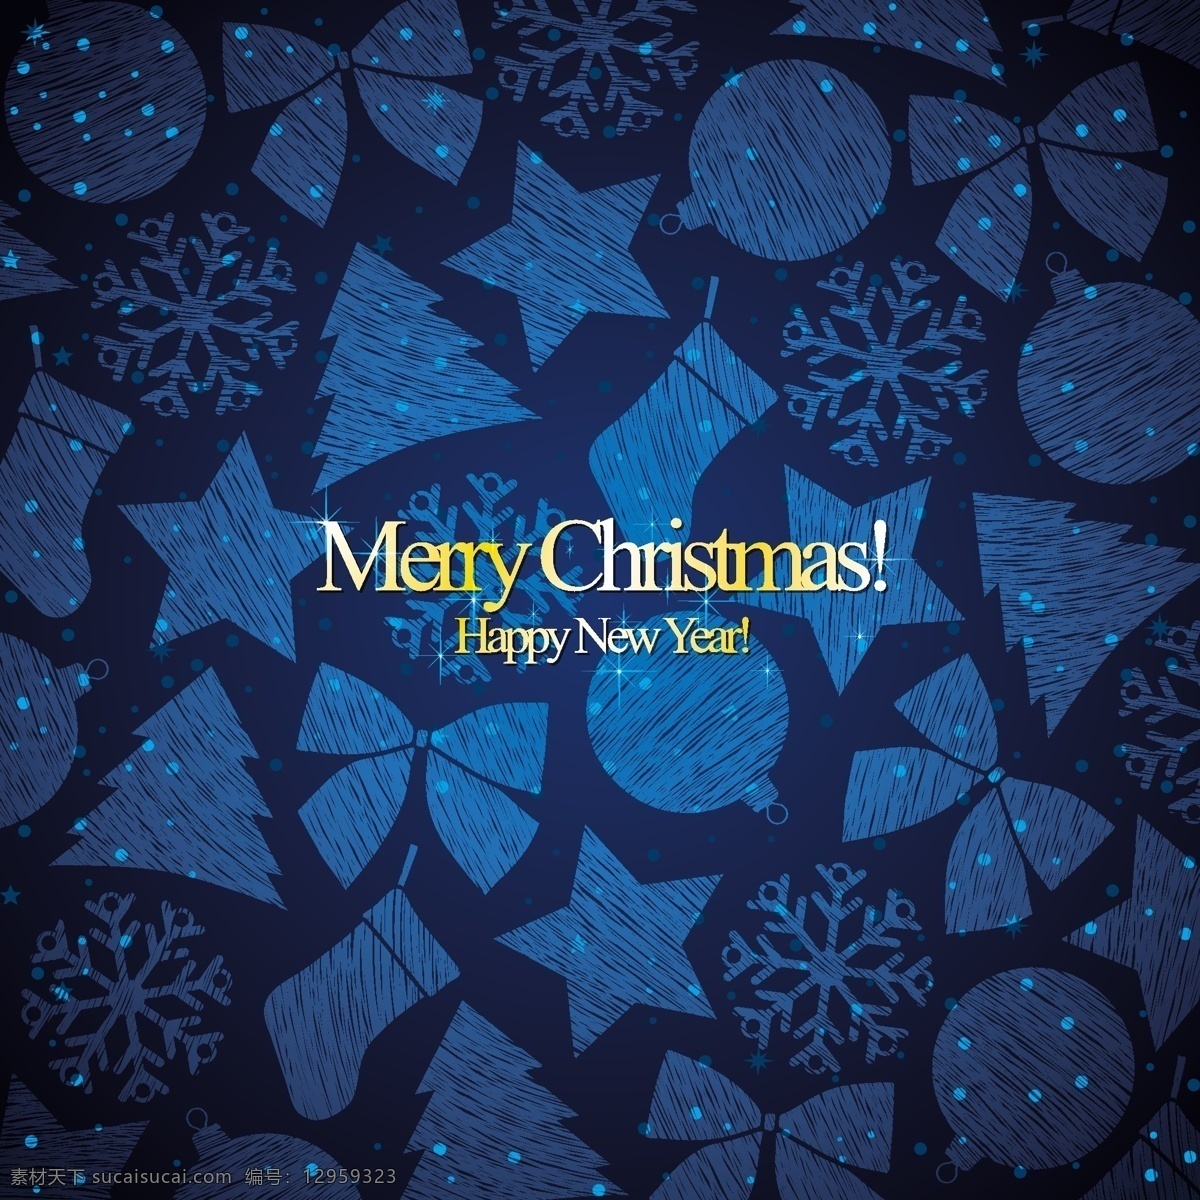 蓝色 抽象 圣诞 图案 背景 web 创意 高分辨率 黑暗 接口 蓝色的 免费 圣诞节 病 媒 生物 时尚 独特的 原始的 高质量 图形 质量 新鲜的 设计新的 ui元素 hd 元素 详细的 圣诞节的模式 雪花 玩具 摘要 psd源文件